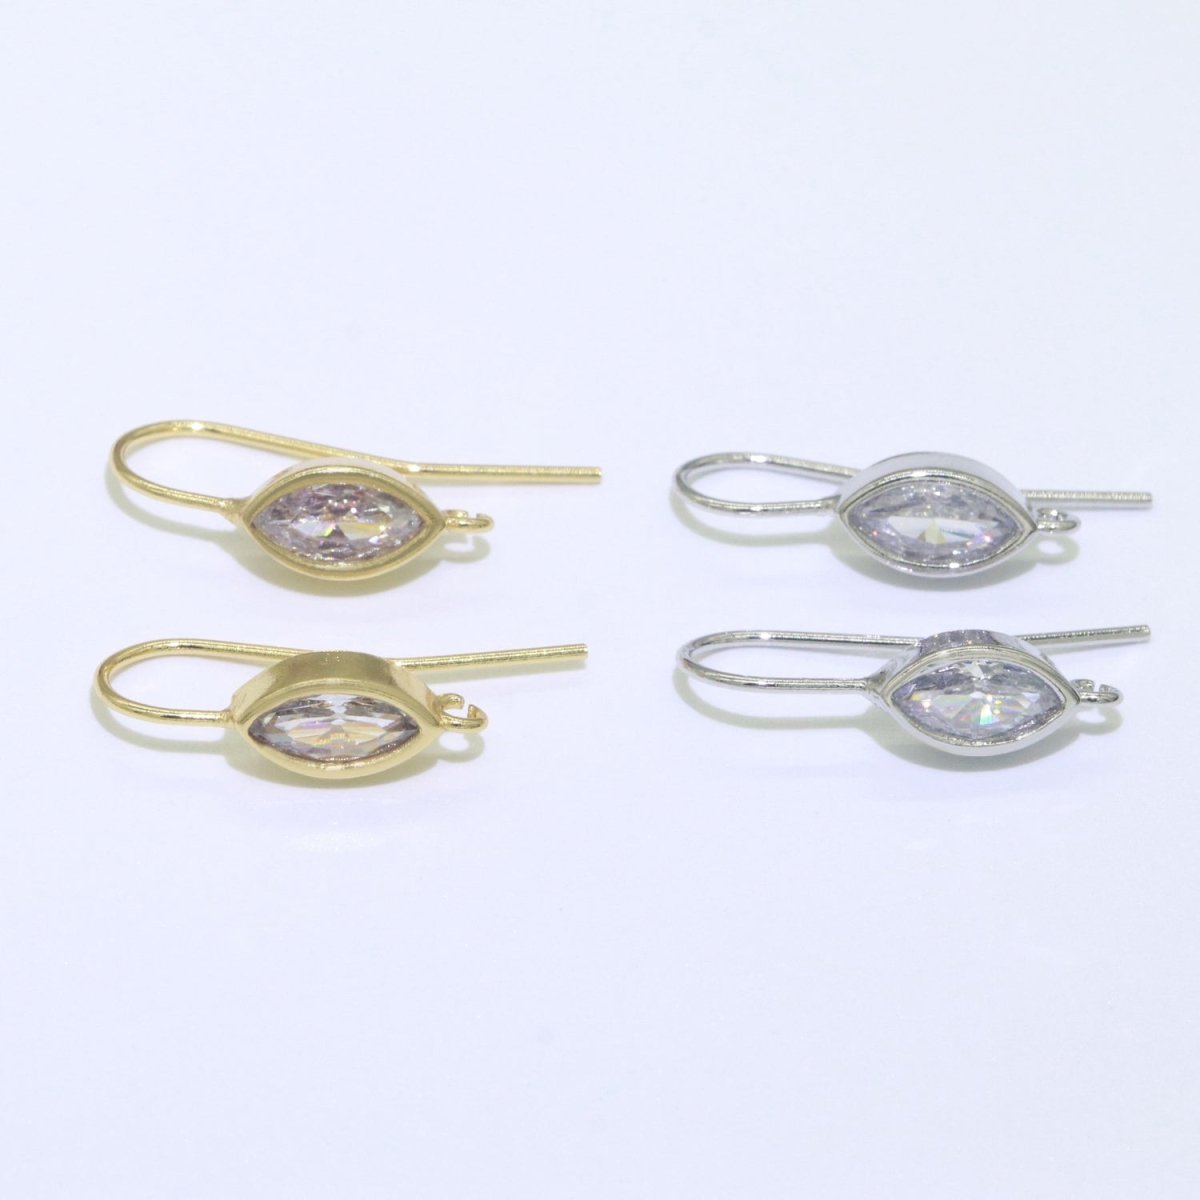 Open Link French Hook Earrings in Gold, Fish Hook Earring Eye CZ Earring Minimalist Jewelry Making Supply L-496 L-497 - DLUXCA